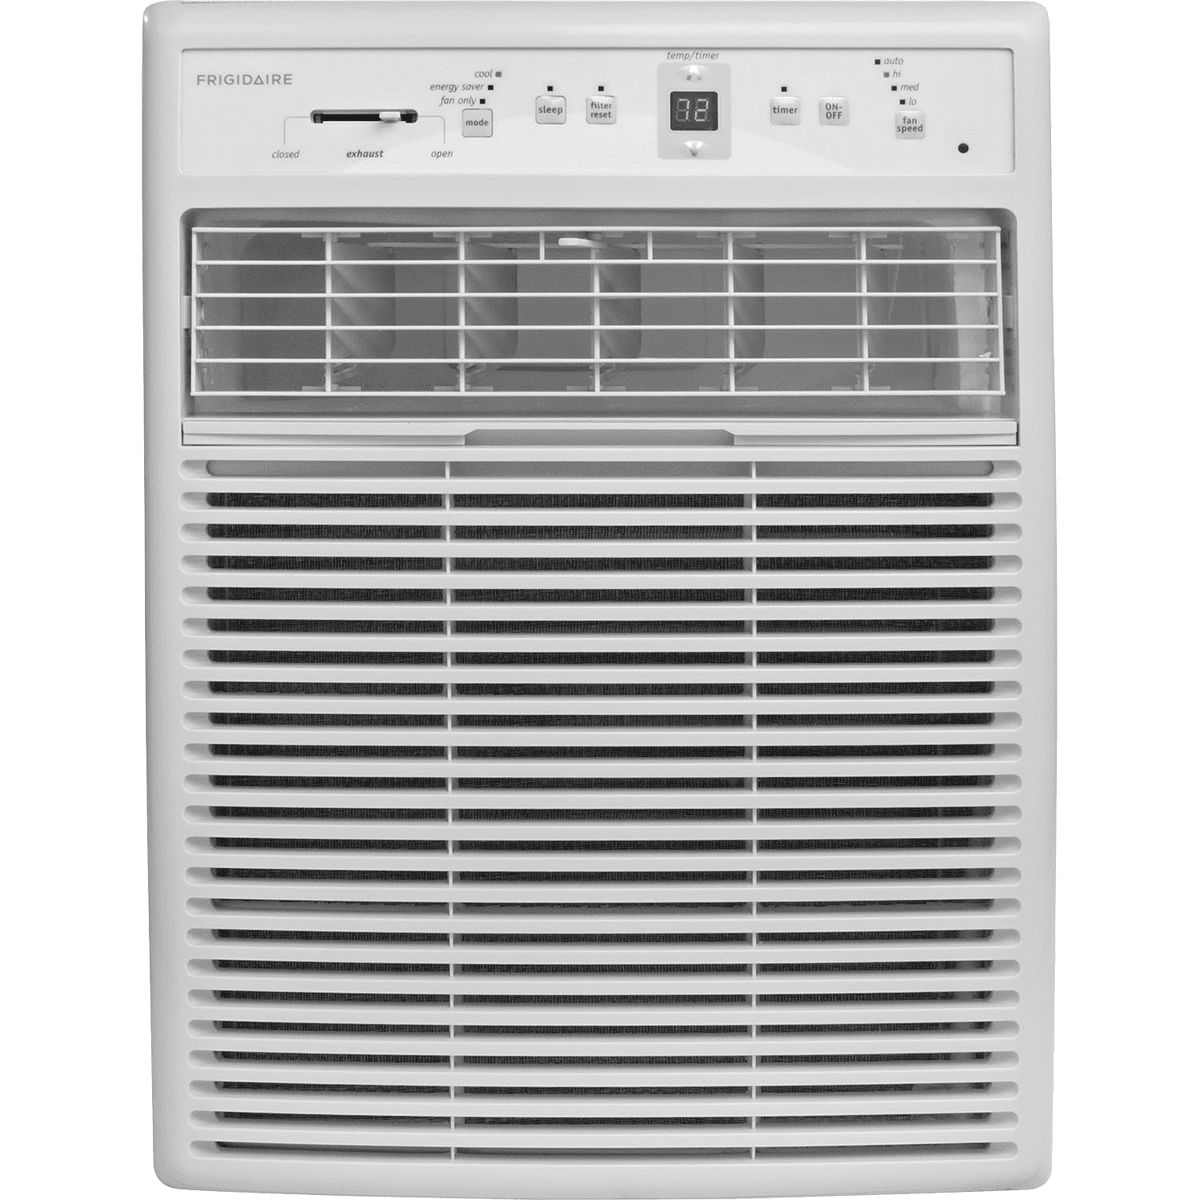 Frigidaire Ffrs1022r1 10,000 Btu Casement Window Air Conditioner